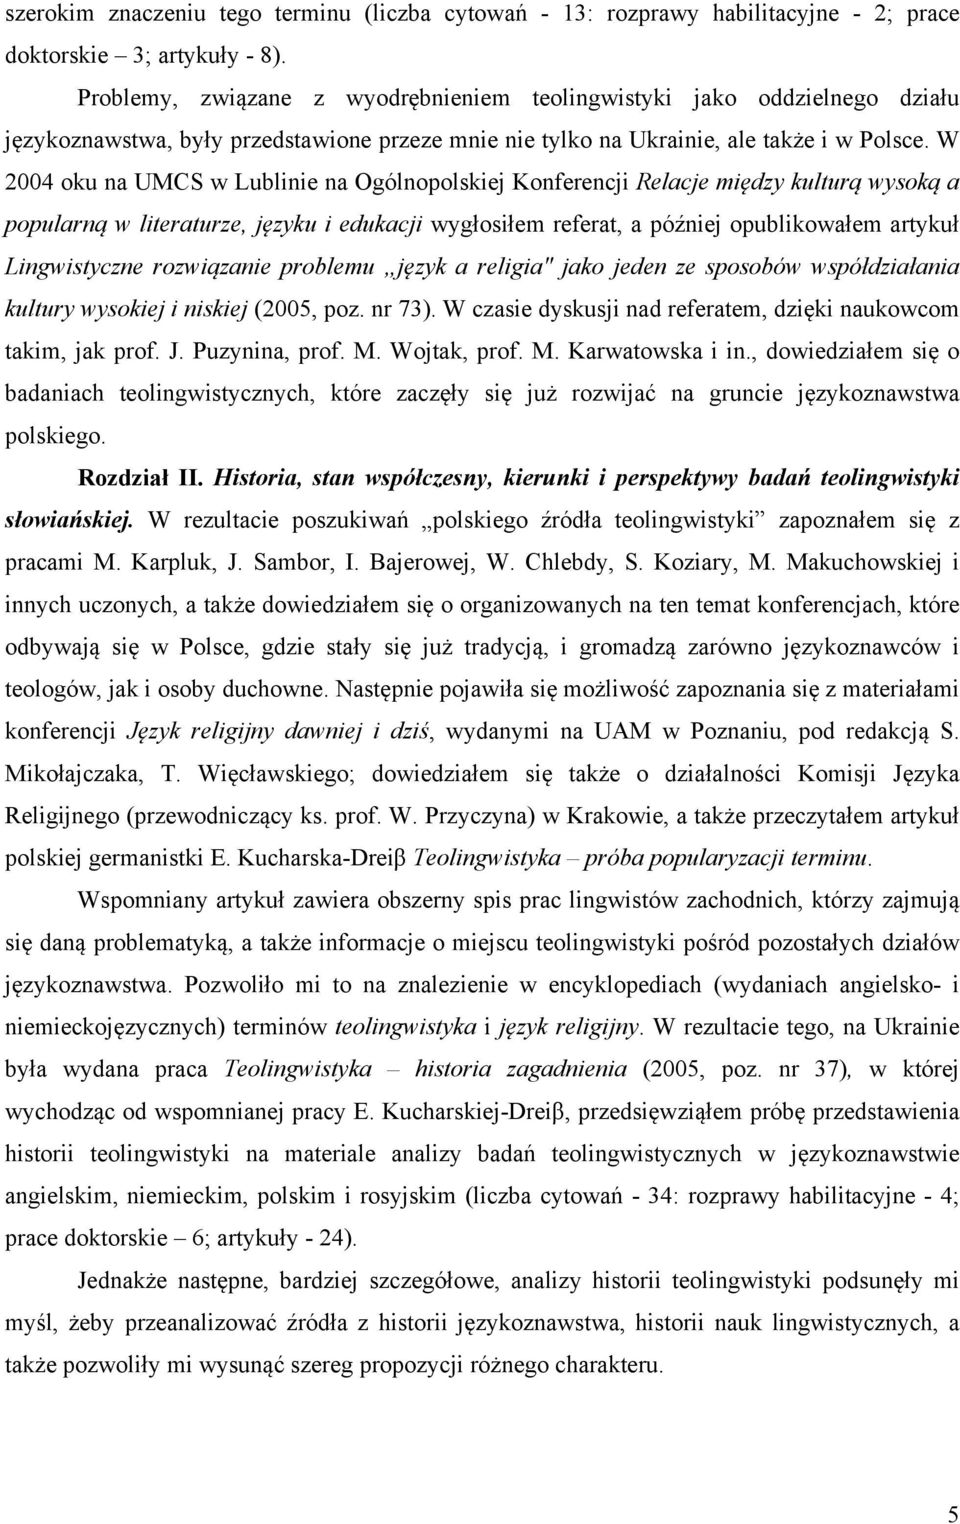 W 2004 oku na UMCS w Lublinie na Ogólnopolskiej Konferencji Relacje między kulturą wysoką a popularną w literaturze, języku i edukacji wygłosiłem referat, a później opublikowałem artykuł